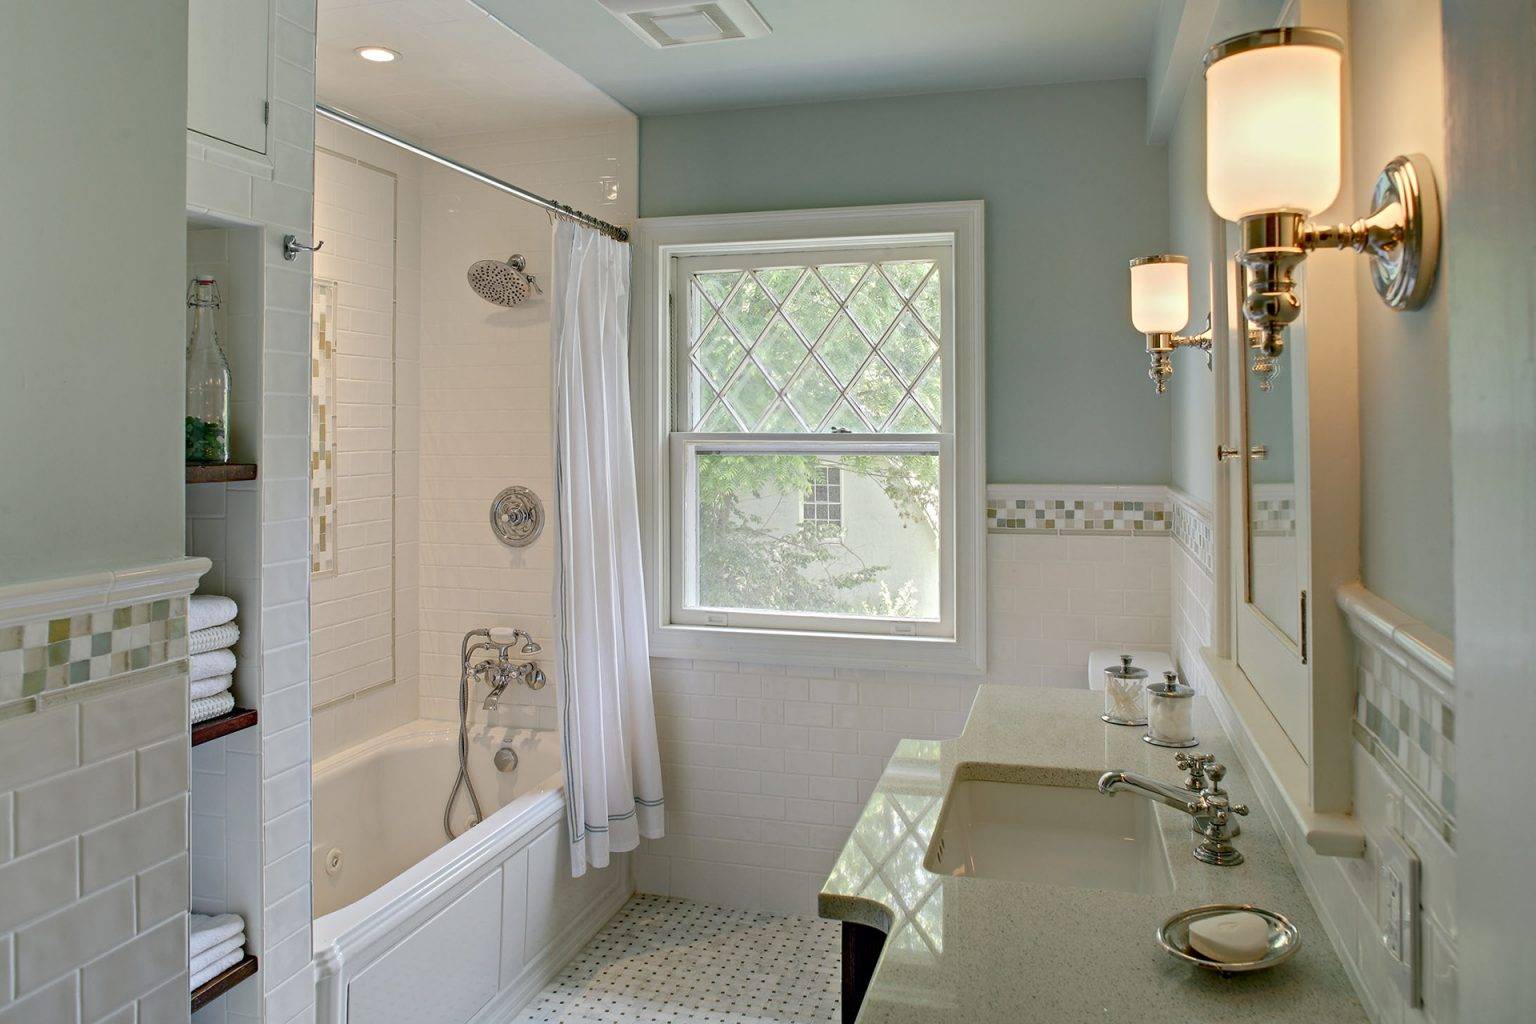 Ванная в стиле прованс: уют в квартире, как подобрать мебель, плитку и зеркало, как правильно оформить маленькую комнату, особенности дизайна, фото интерьеров